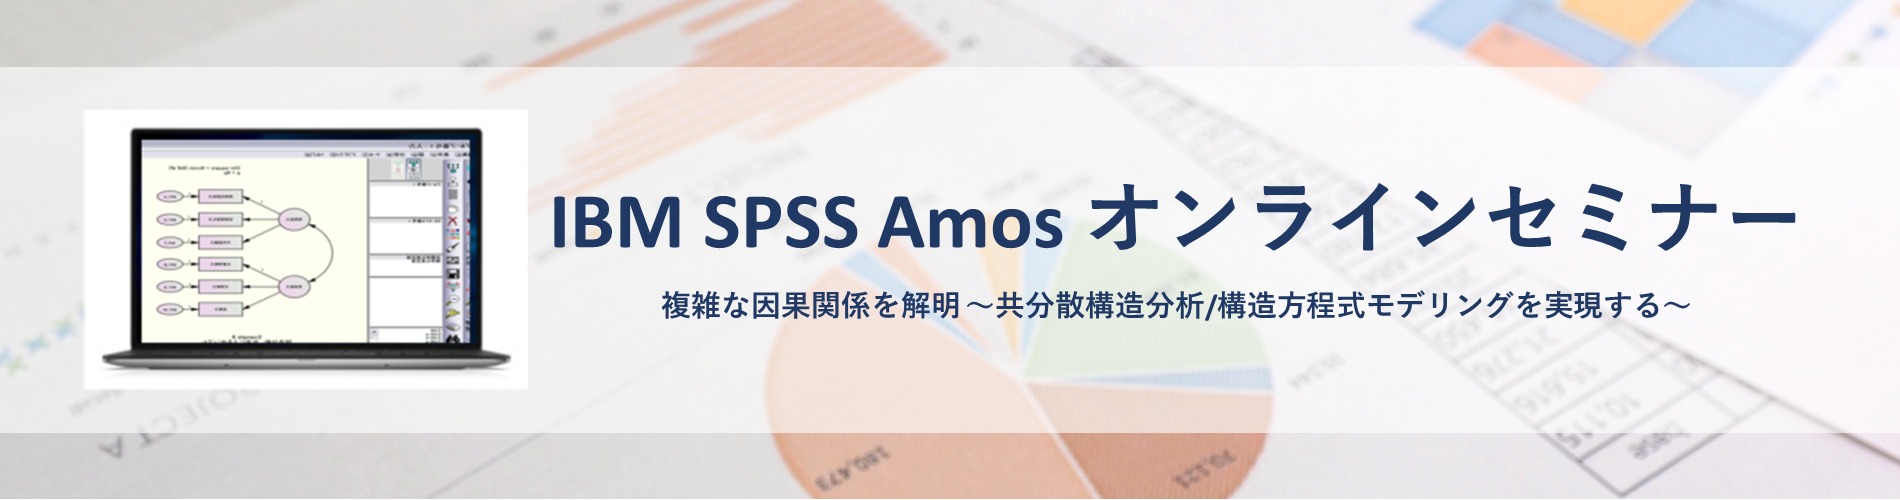 【オンラインセミナー】複雑な因果関係を解明 ～共分散構造分析/構造方程式モデリングを実現する IBM SPSS Amos関連記事